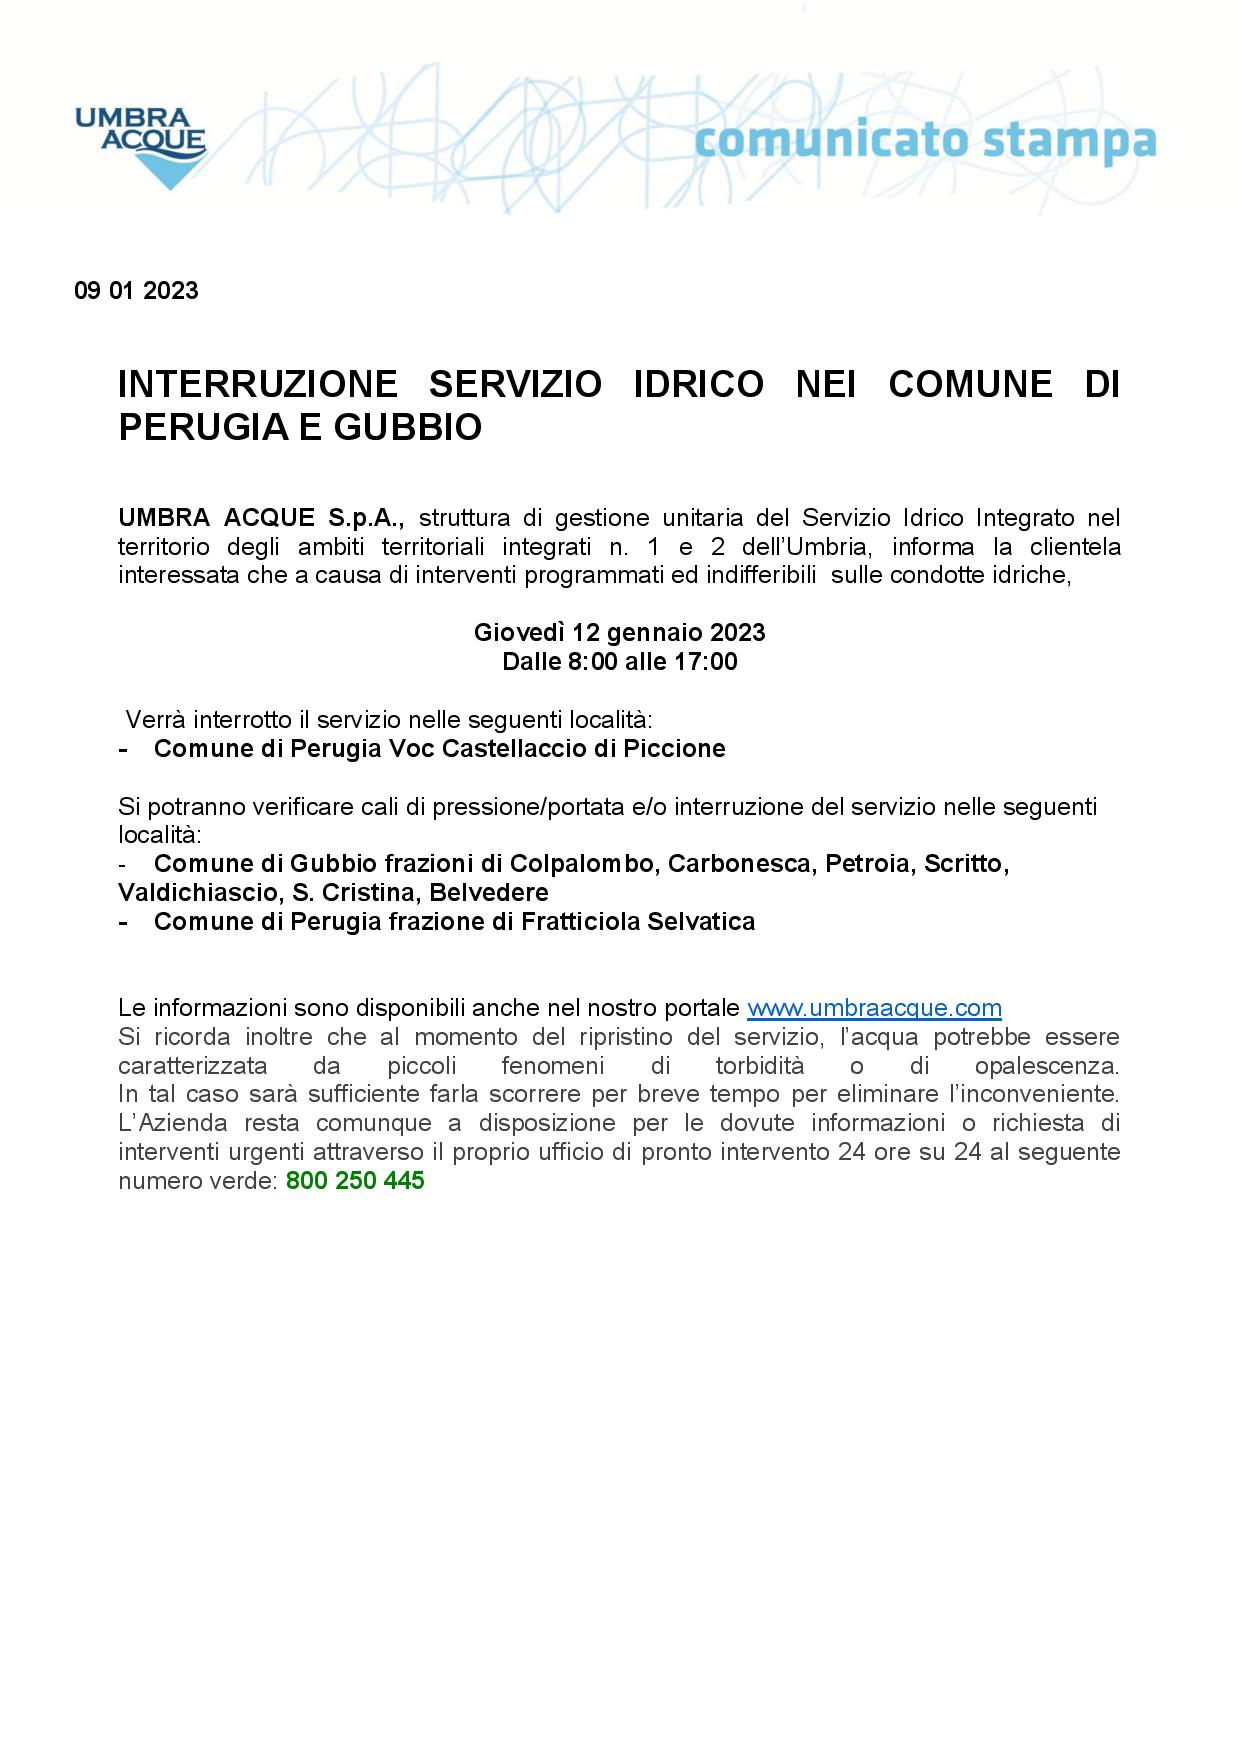 INTERRUZIONE-SERVIZIO-IDRICO-COMUNE-DI-GUBBIO-E-PERUGIA-12-GENNAIO-1-page-001 3133